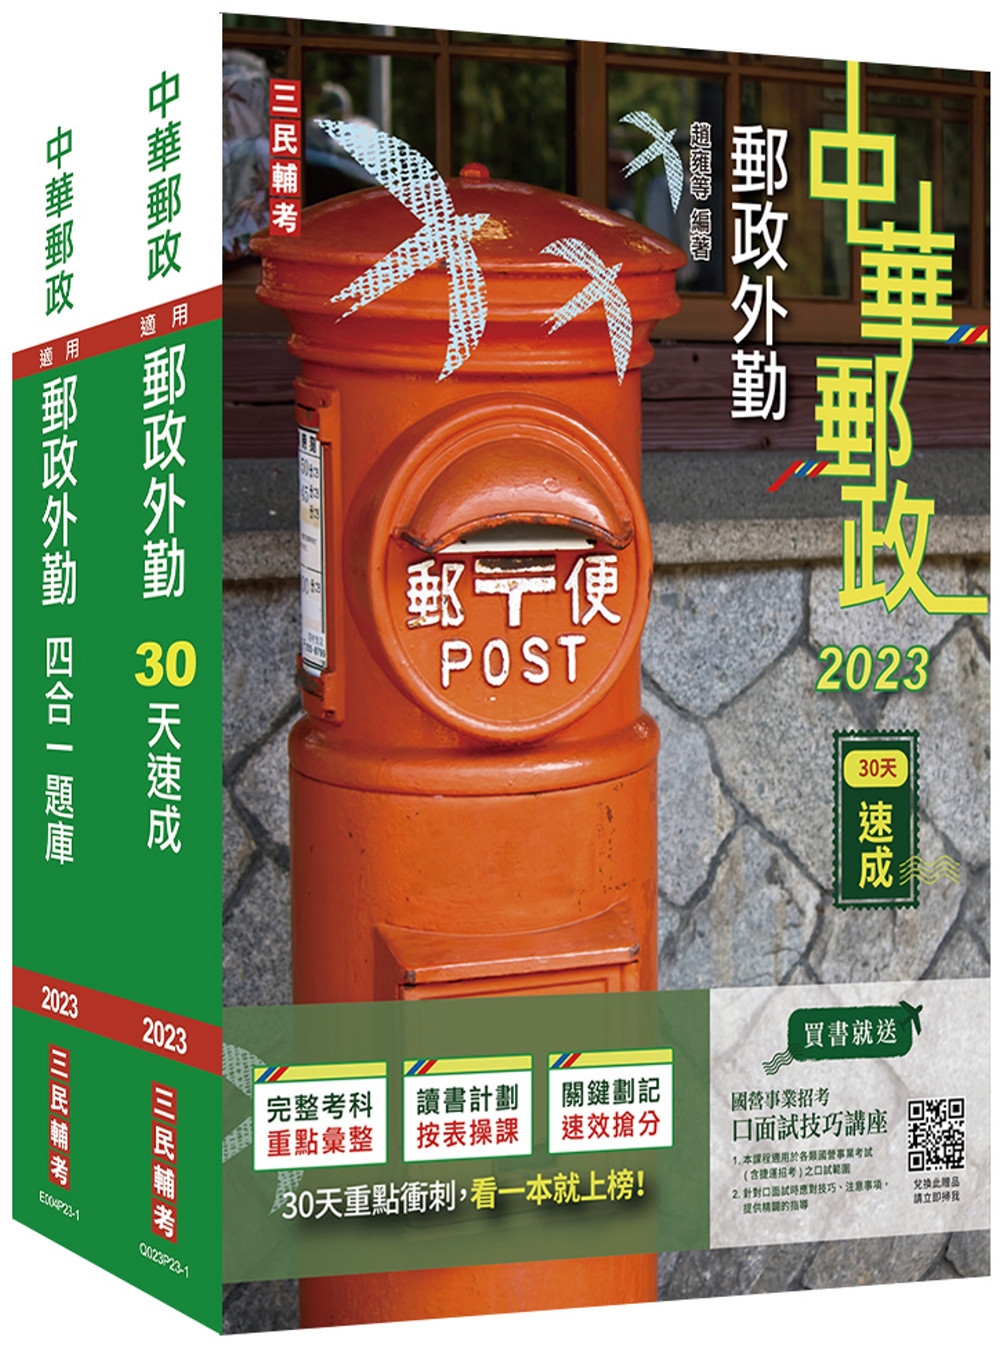 2023郵政(郵局)[外勤人員][速成+題庫]套書(贈郵政外勤小法典)